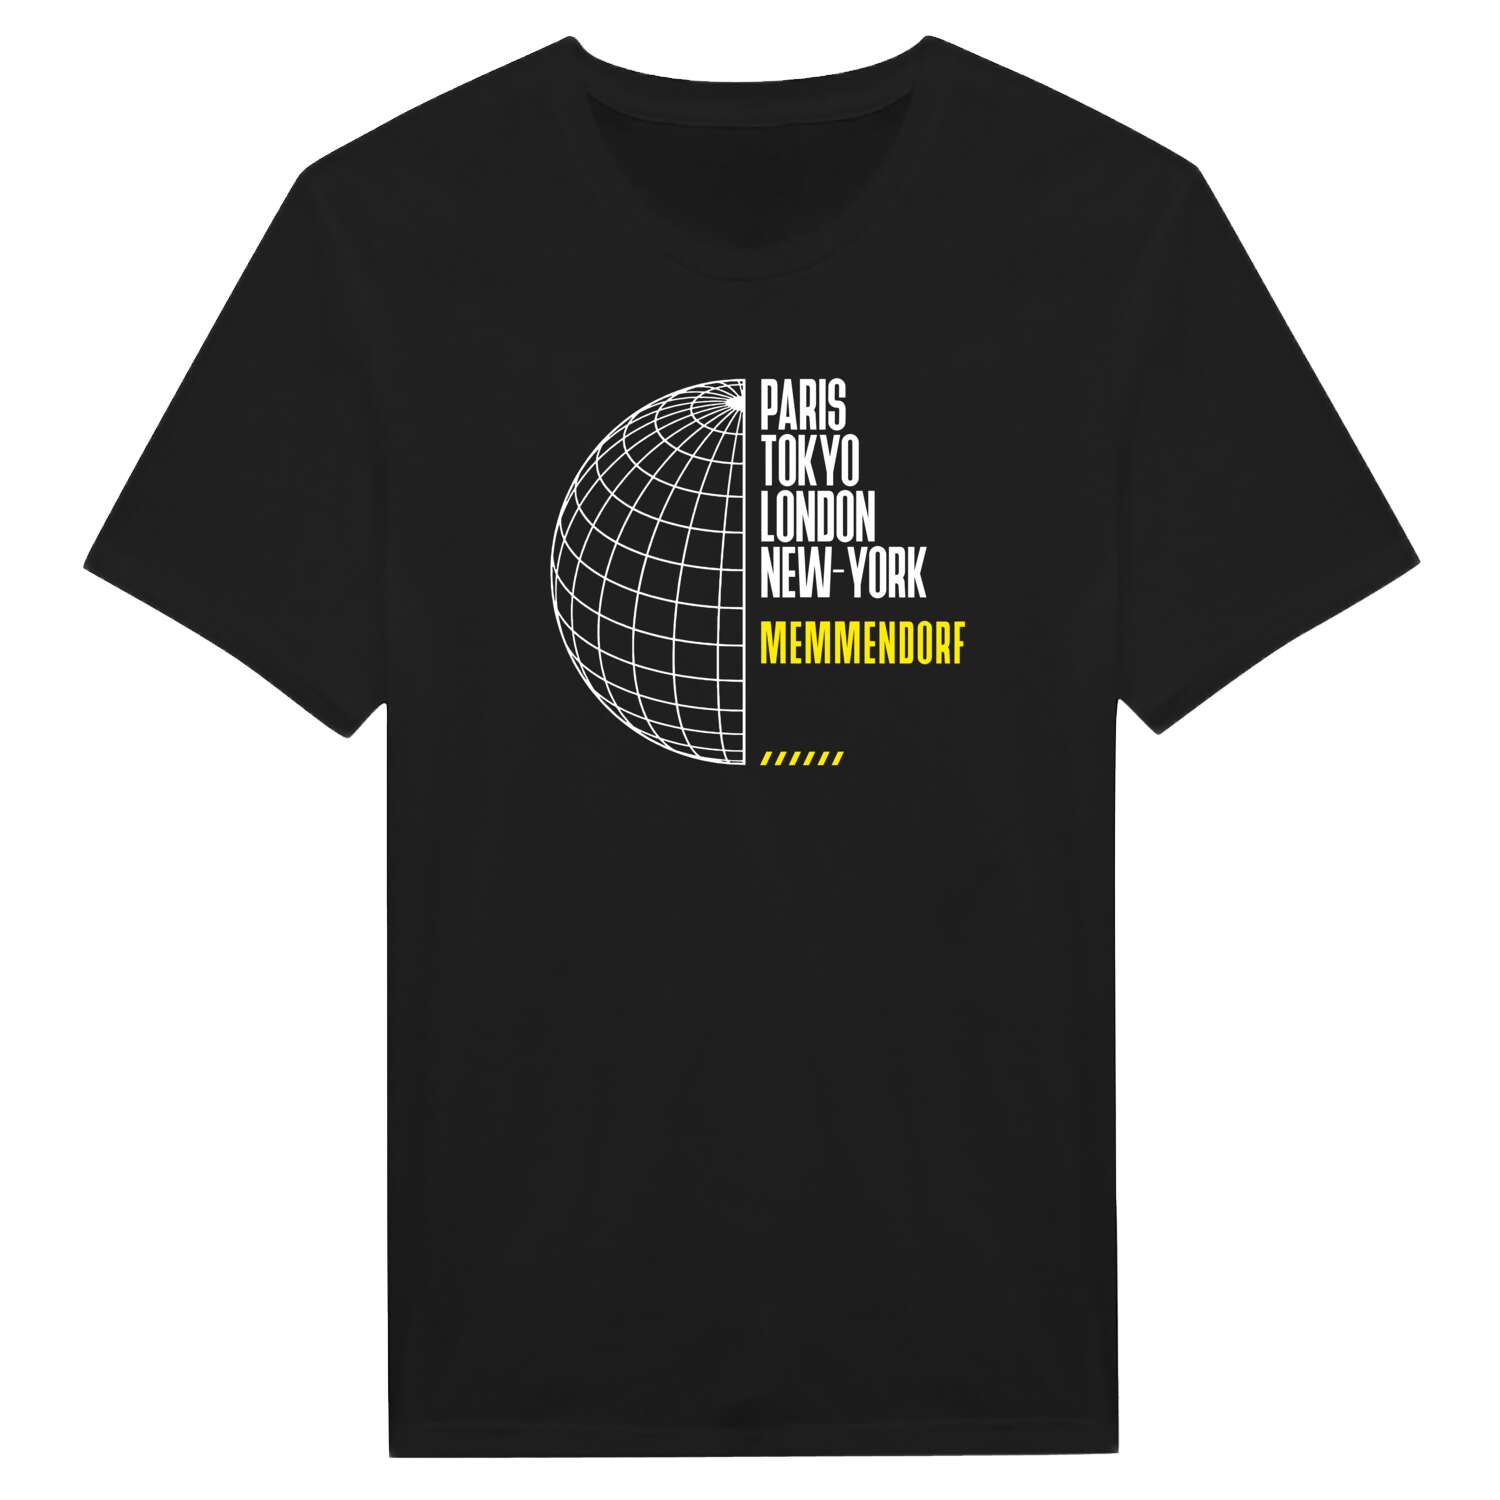 Memmendorf T-Shirt »Paris Tokyo London«